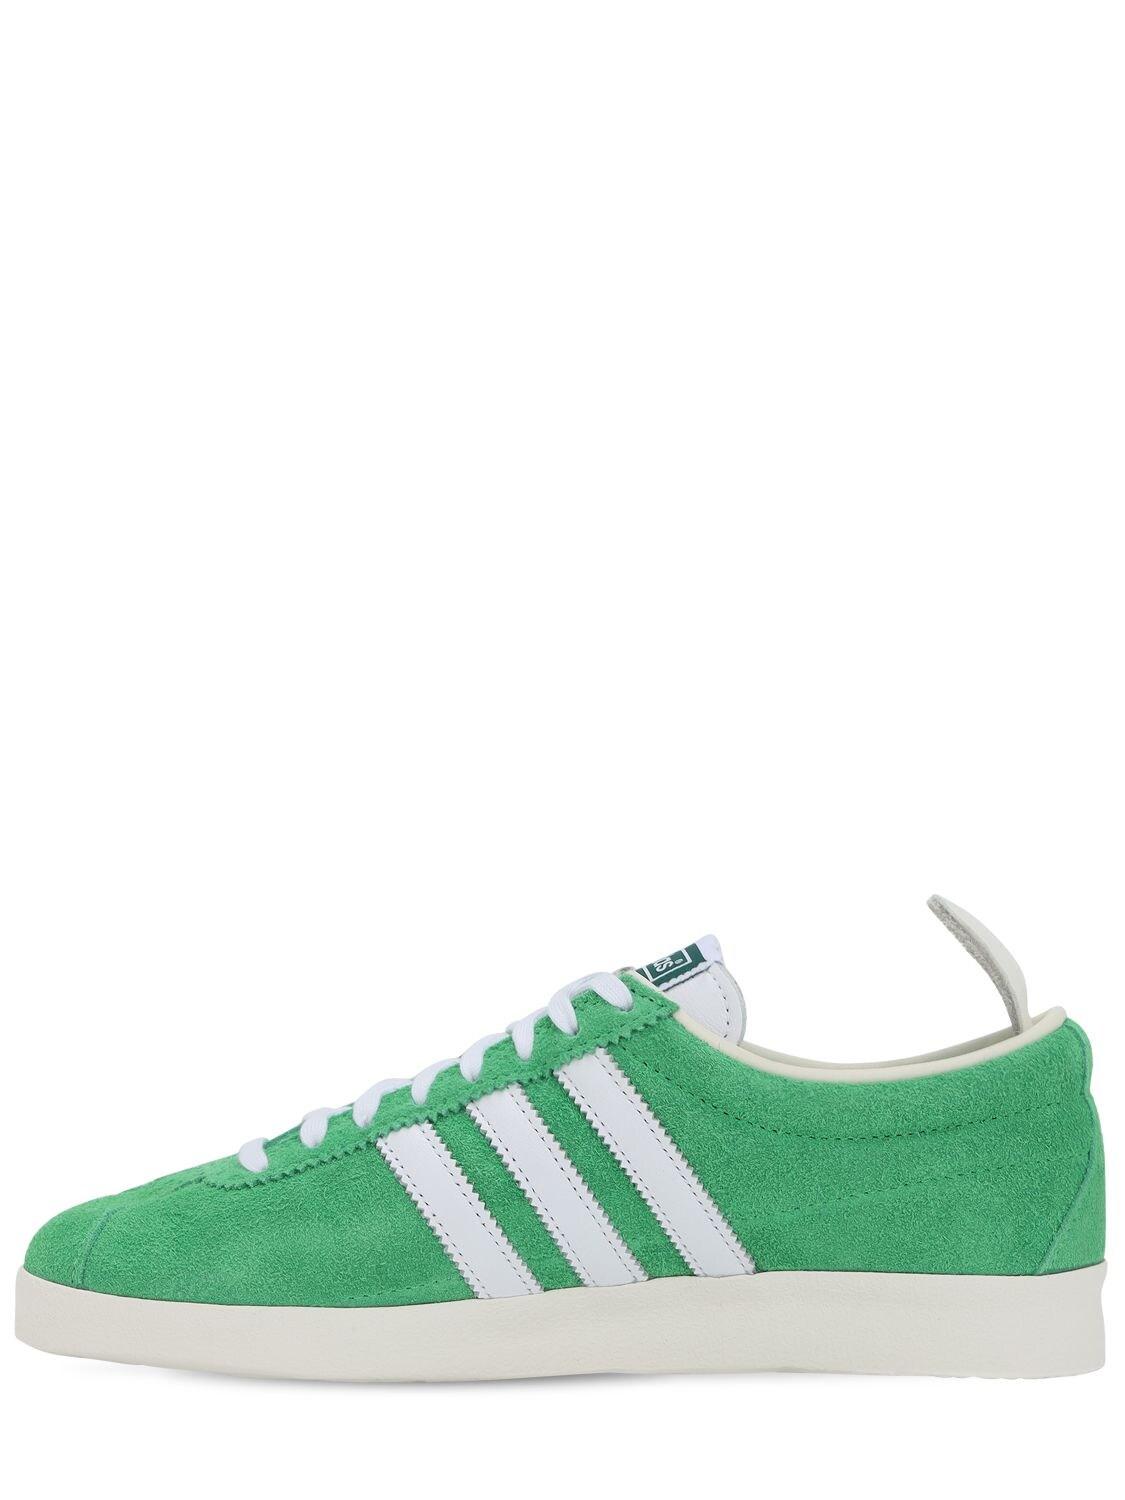 adidas Originals Gazelle Vintage Trainers in Green | Lyst